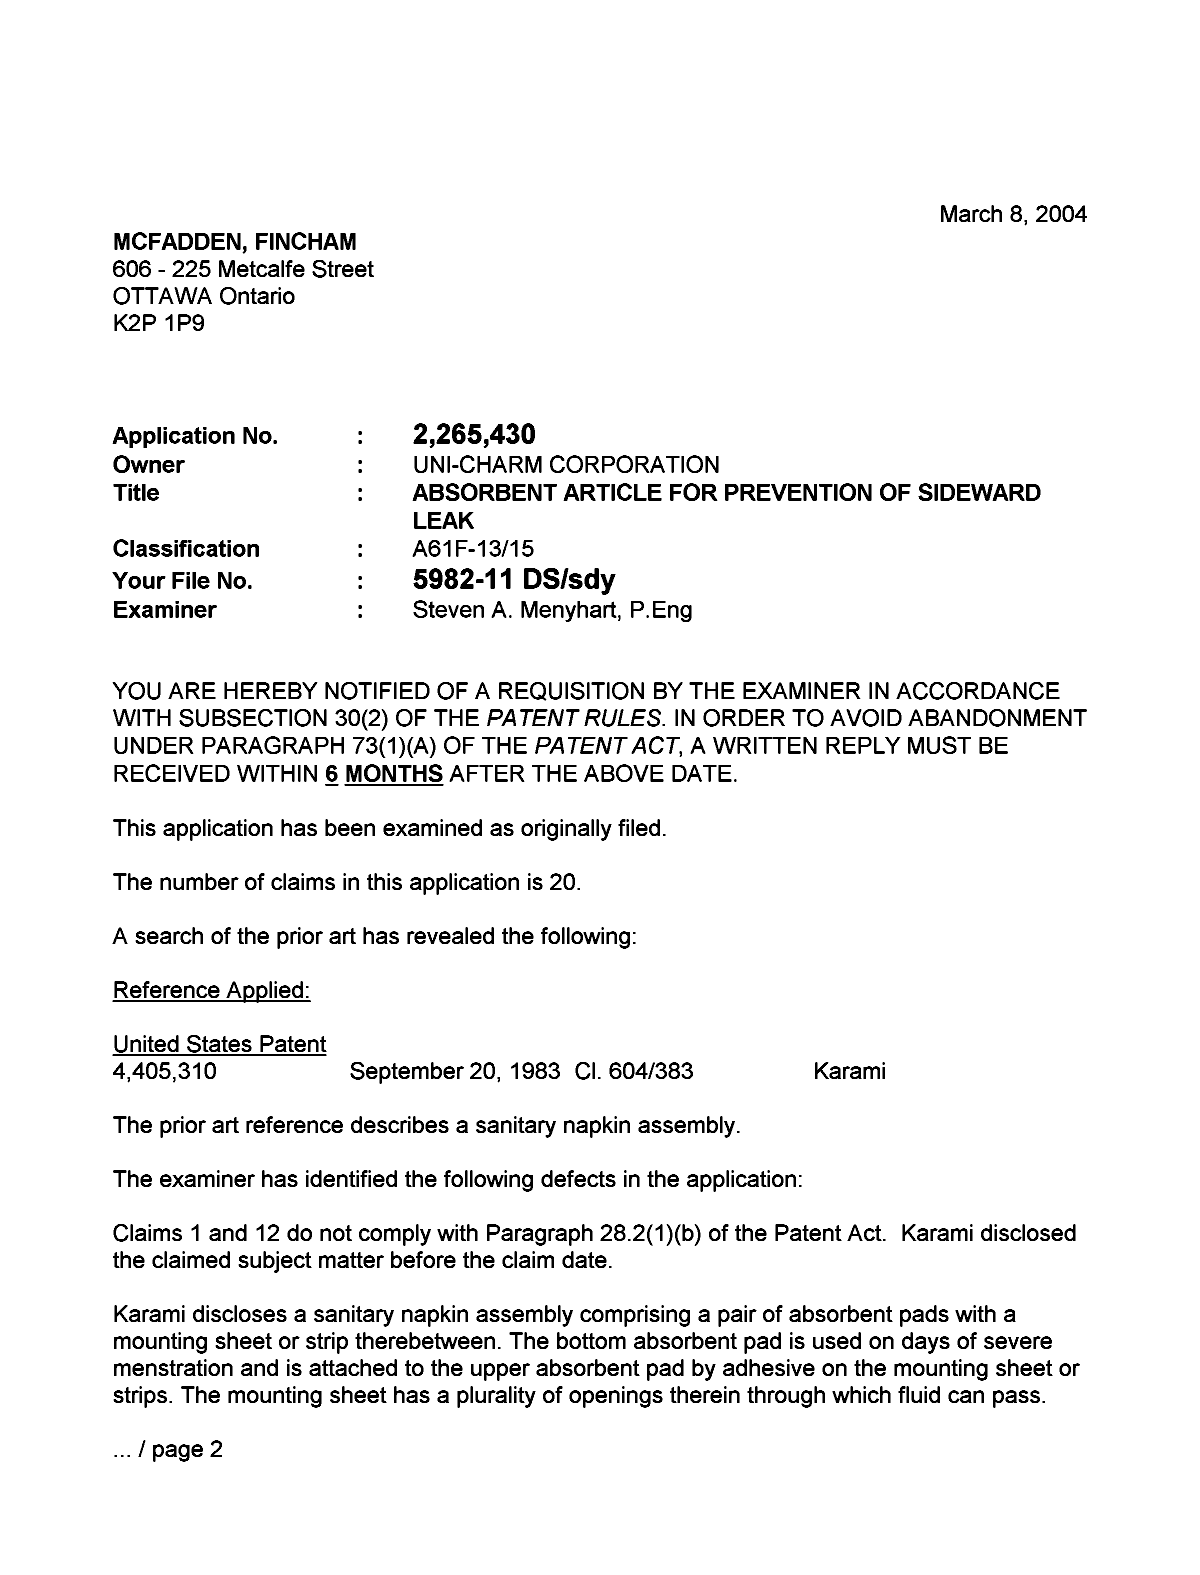 Document de brevet canadien 2265430. Poursuite-Amendment 20040308. Image 1 de 3